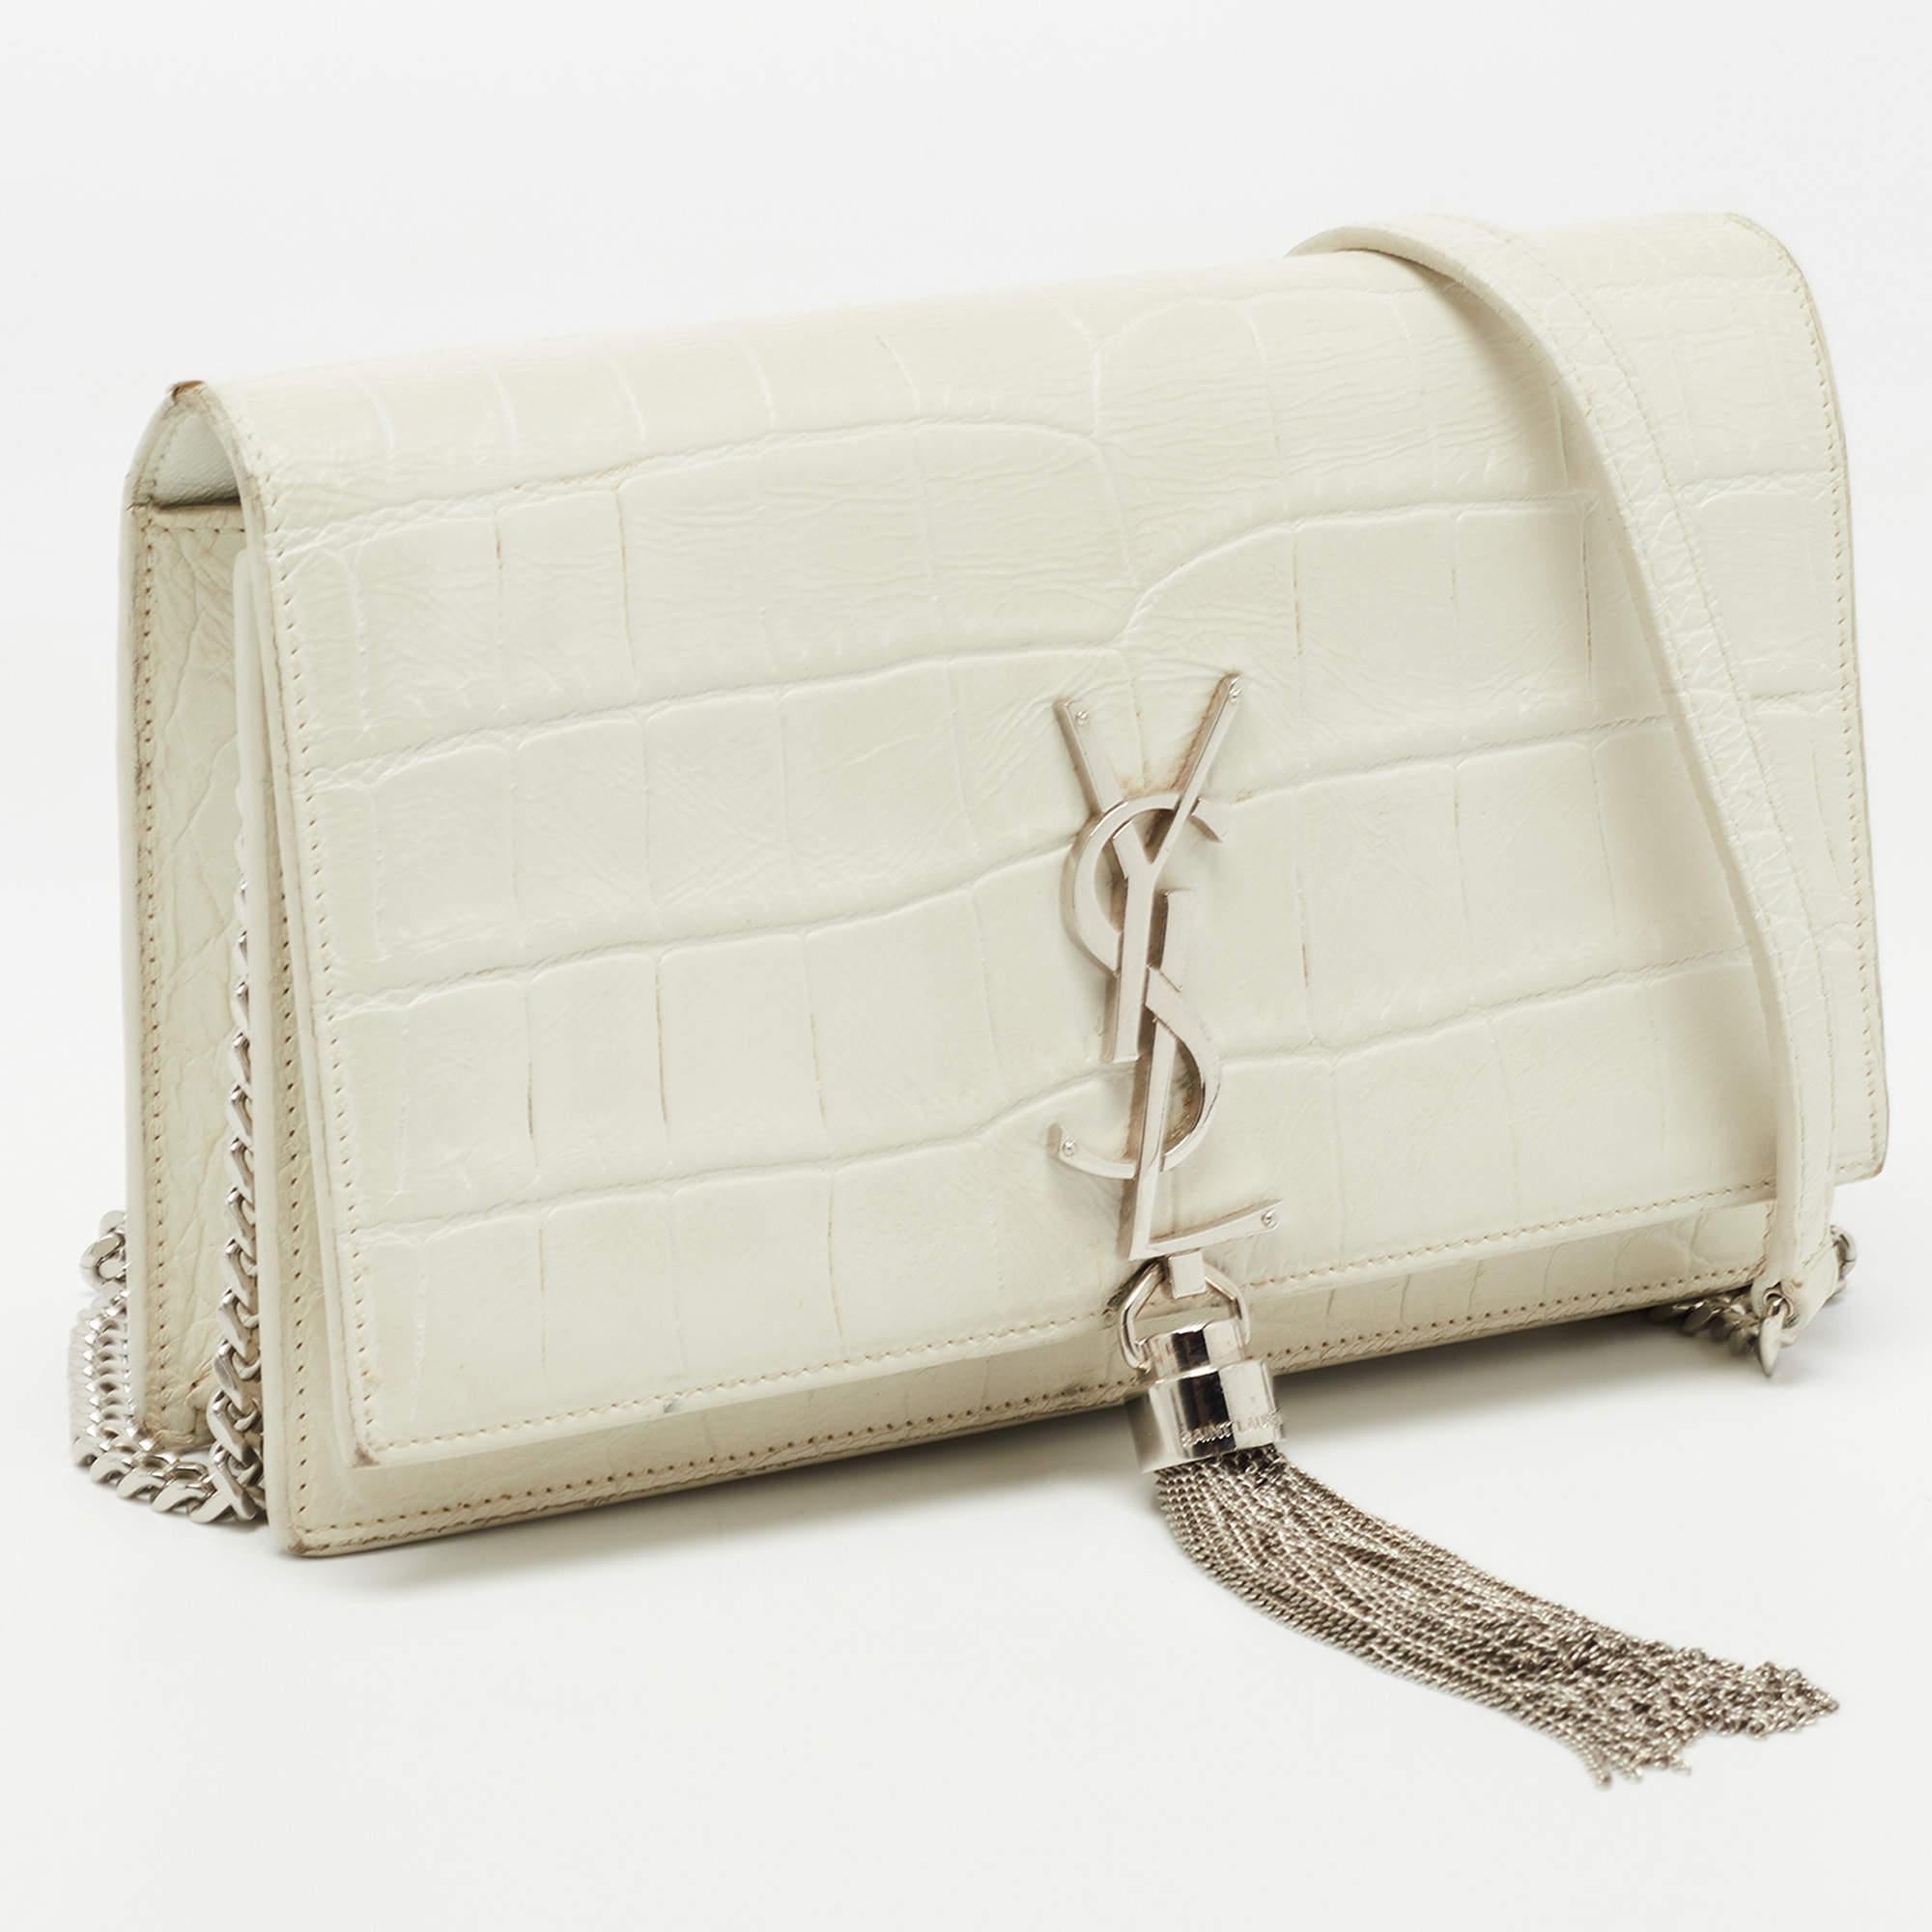 Women's or Men's Saint Laurent White Croc Embossed Leather Kate Tassel Chain Wallet